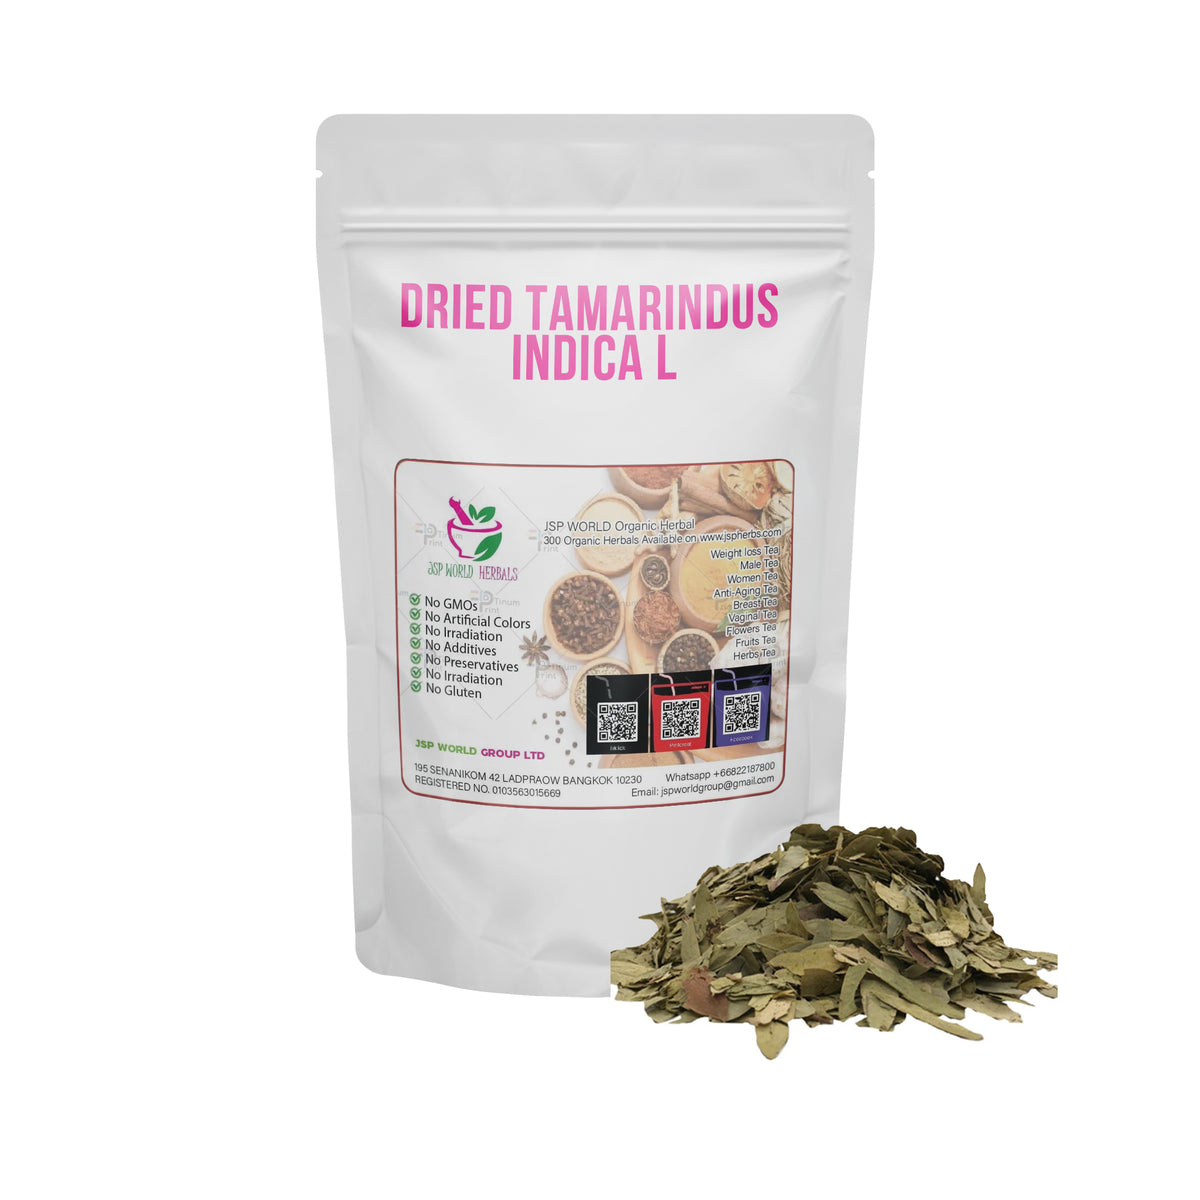 Dried Tamarindus indica L 100 Grams 100% Organic Authenic